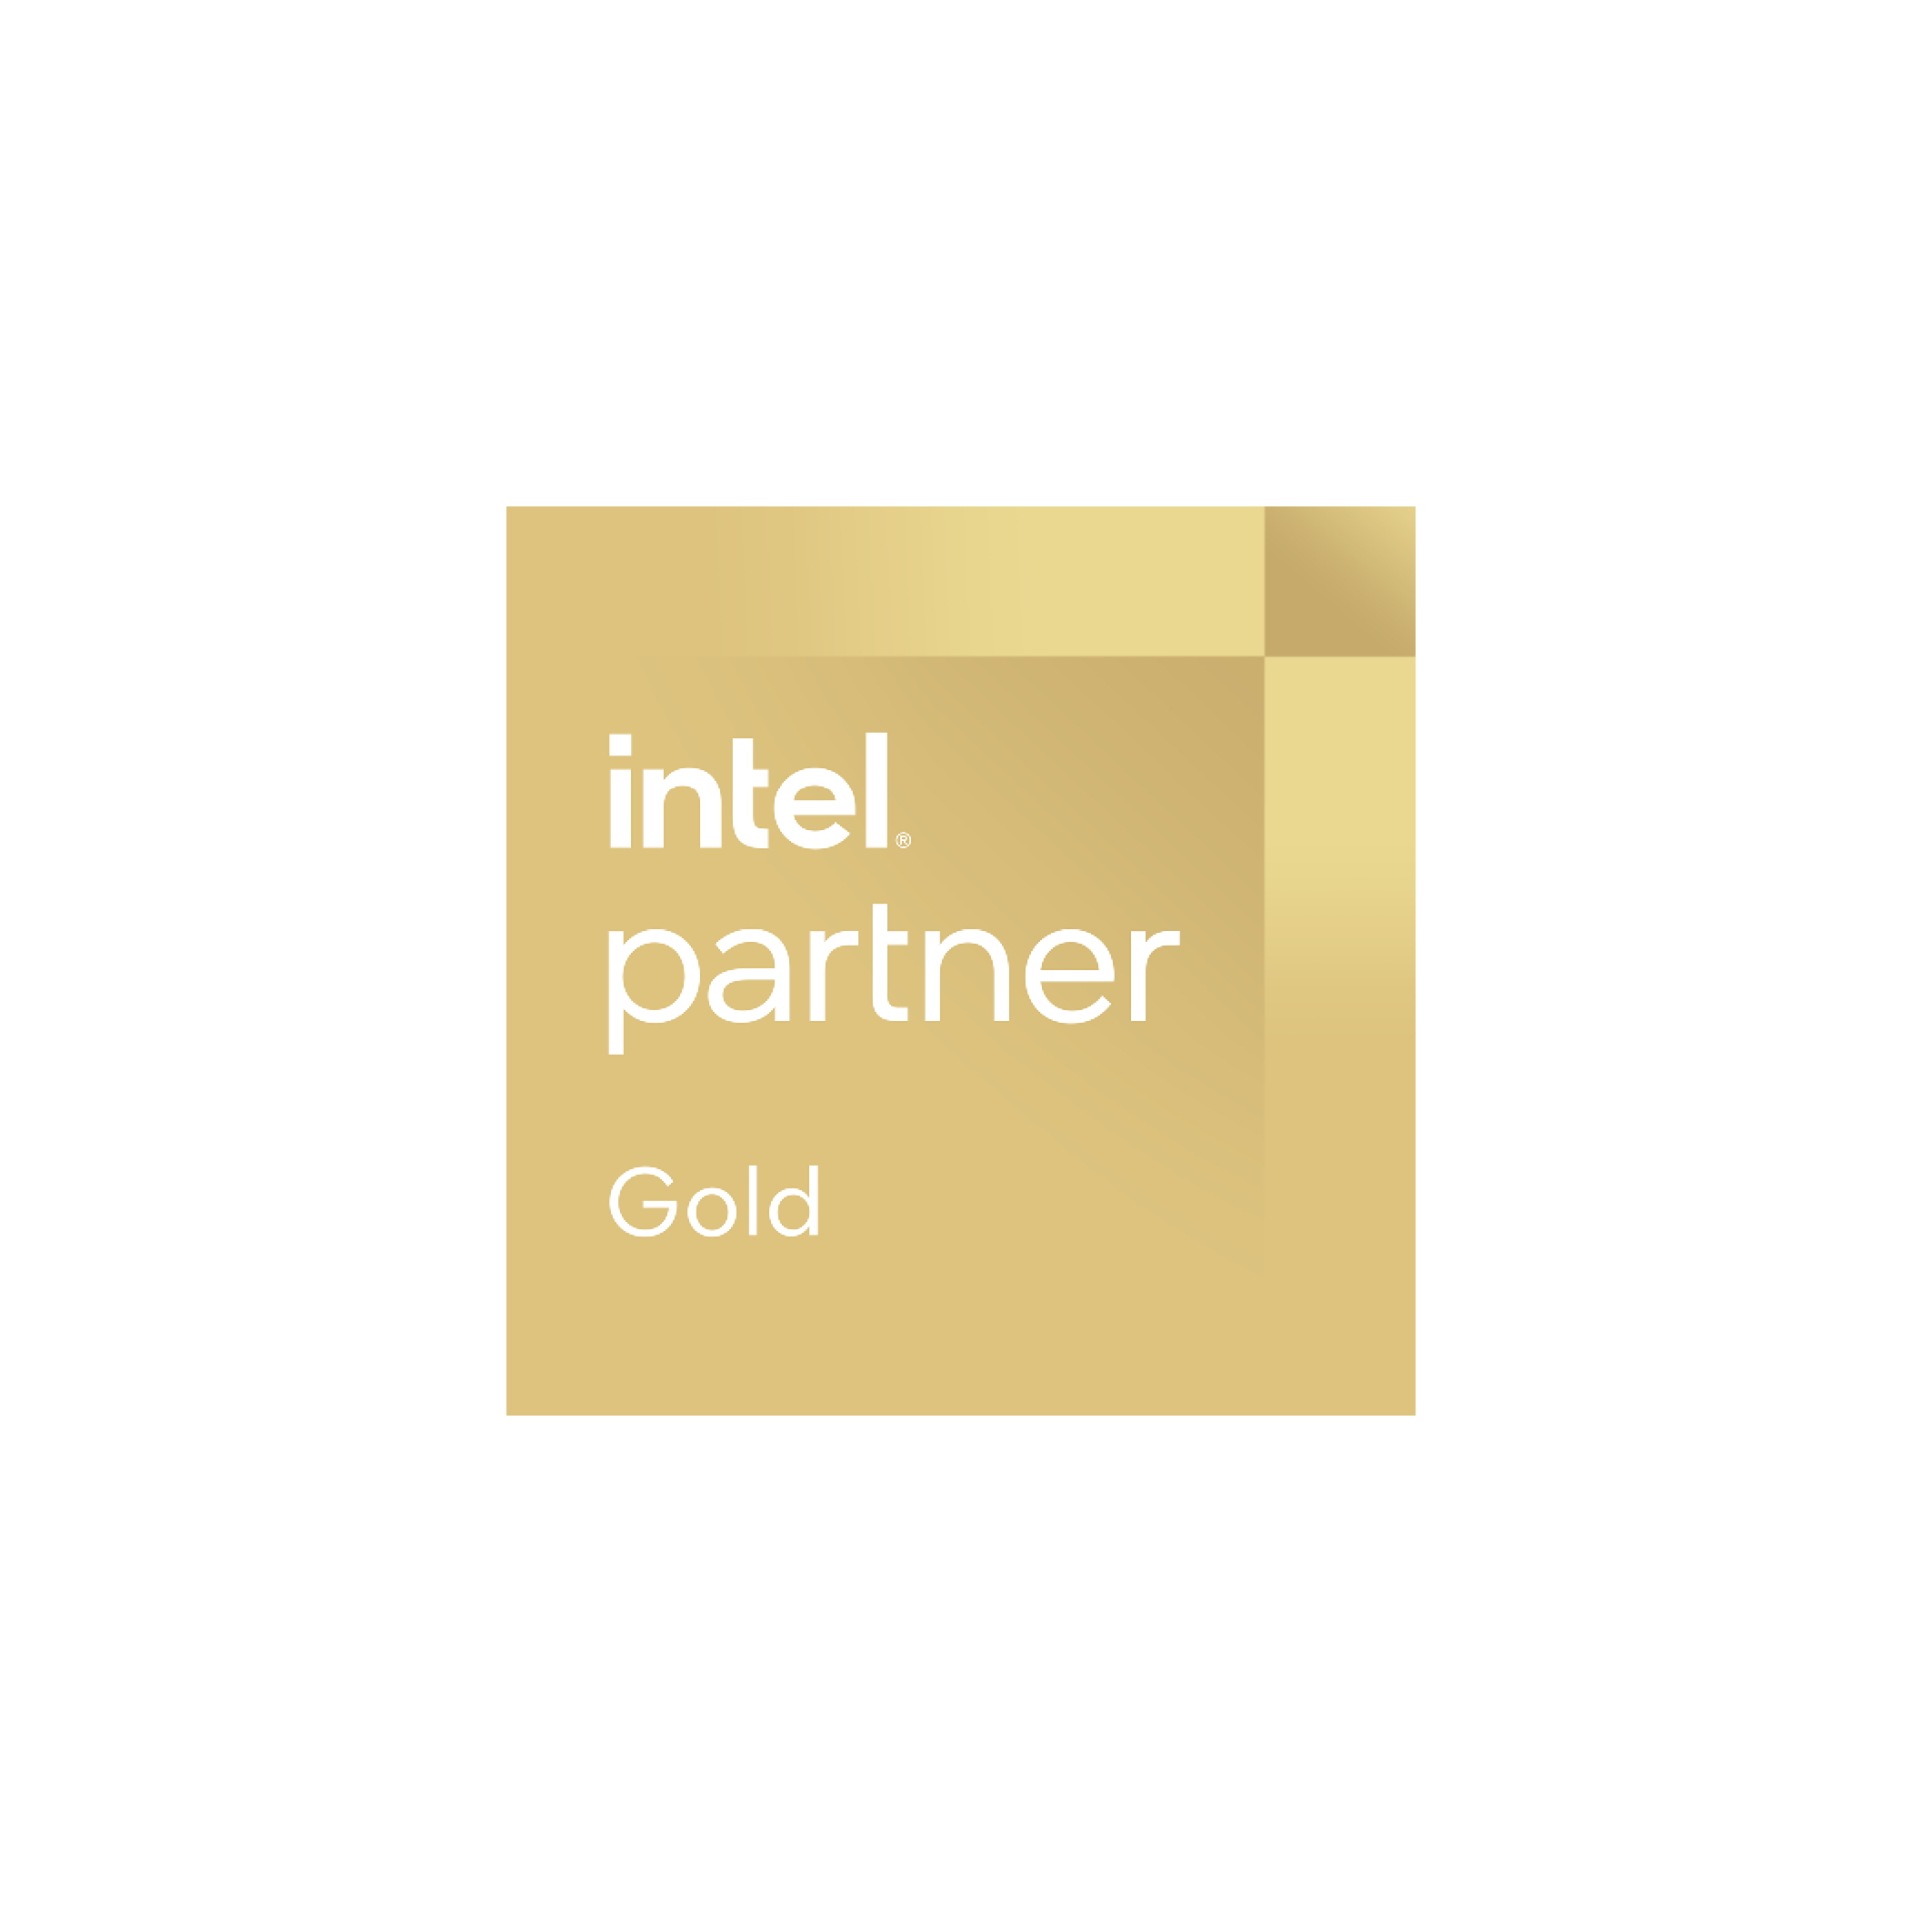 Wir sind ein Technologie-Intel Partner Alliance Gold